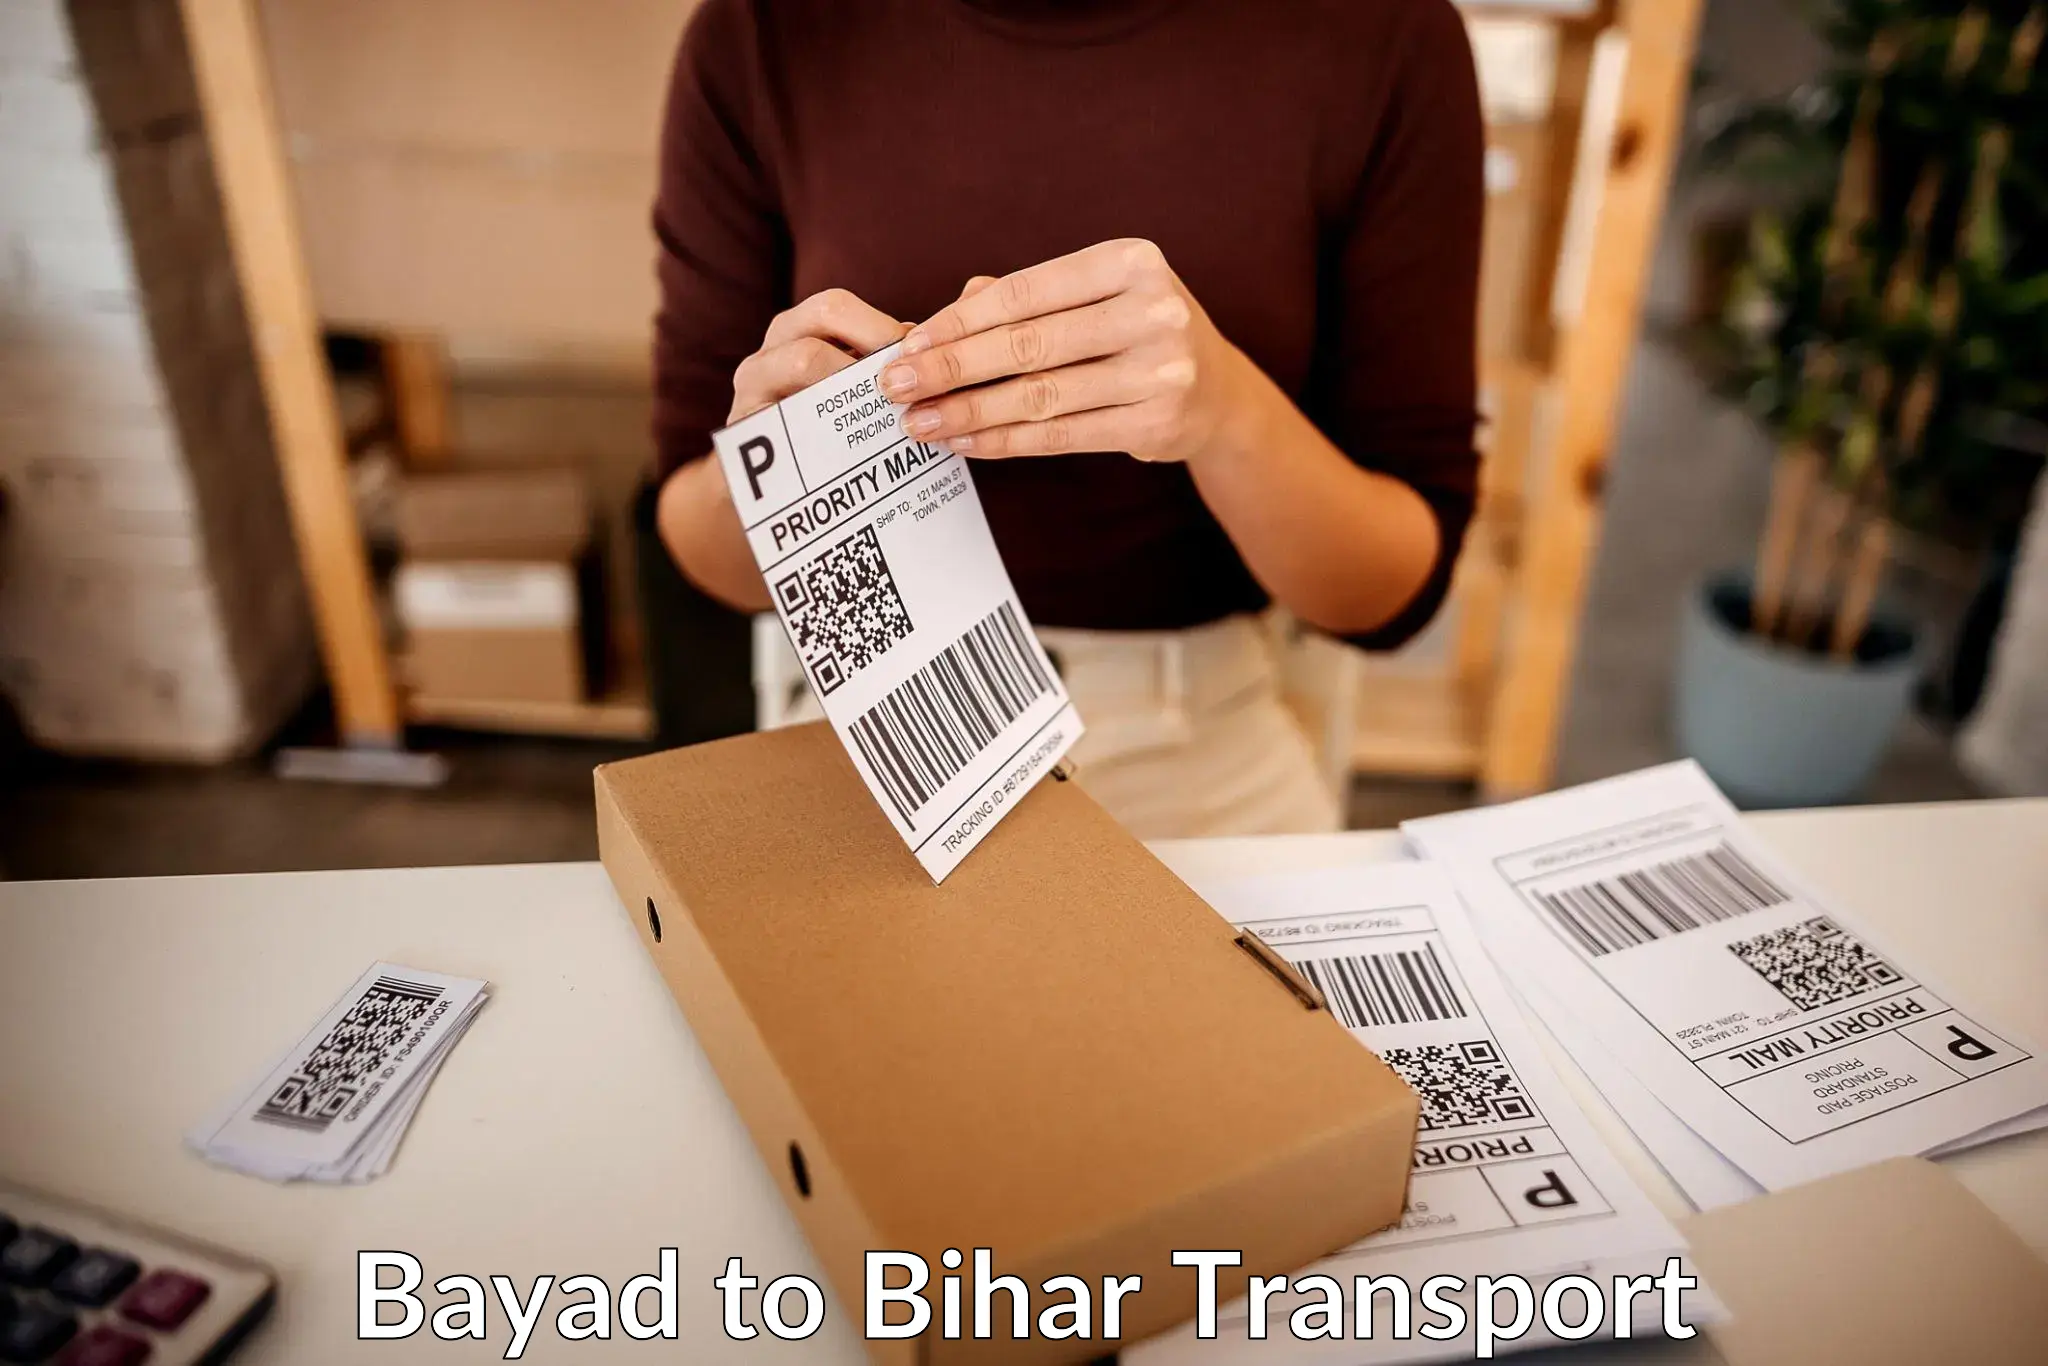 Nearest transport service Bayad to Barauni